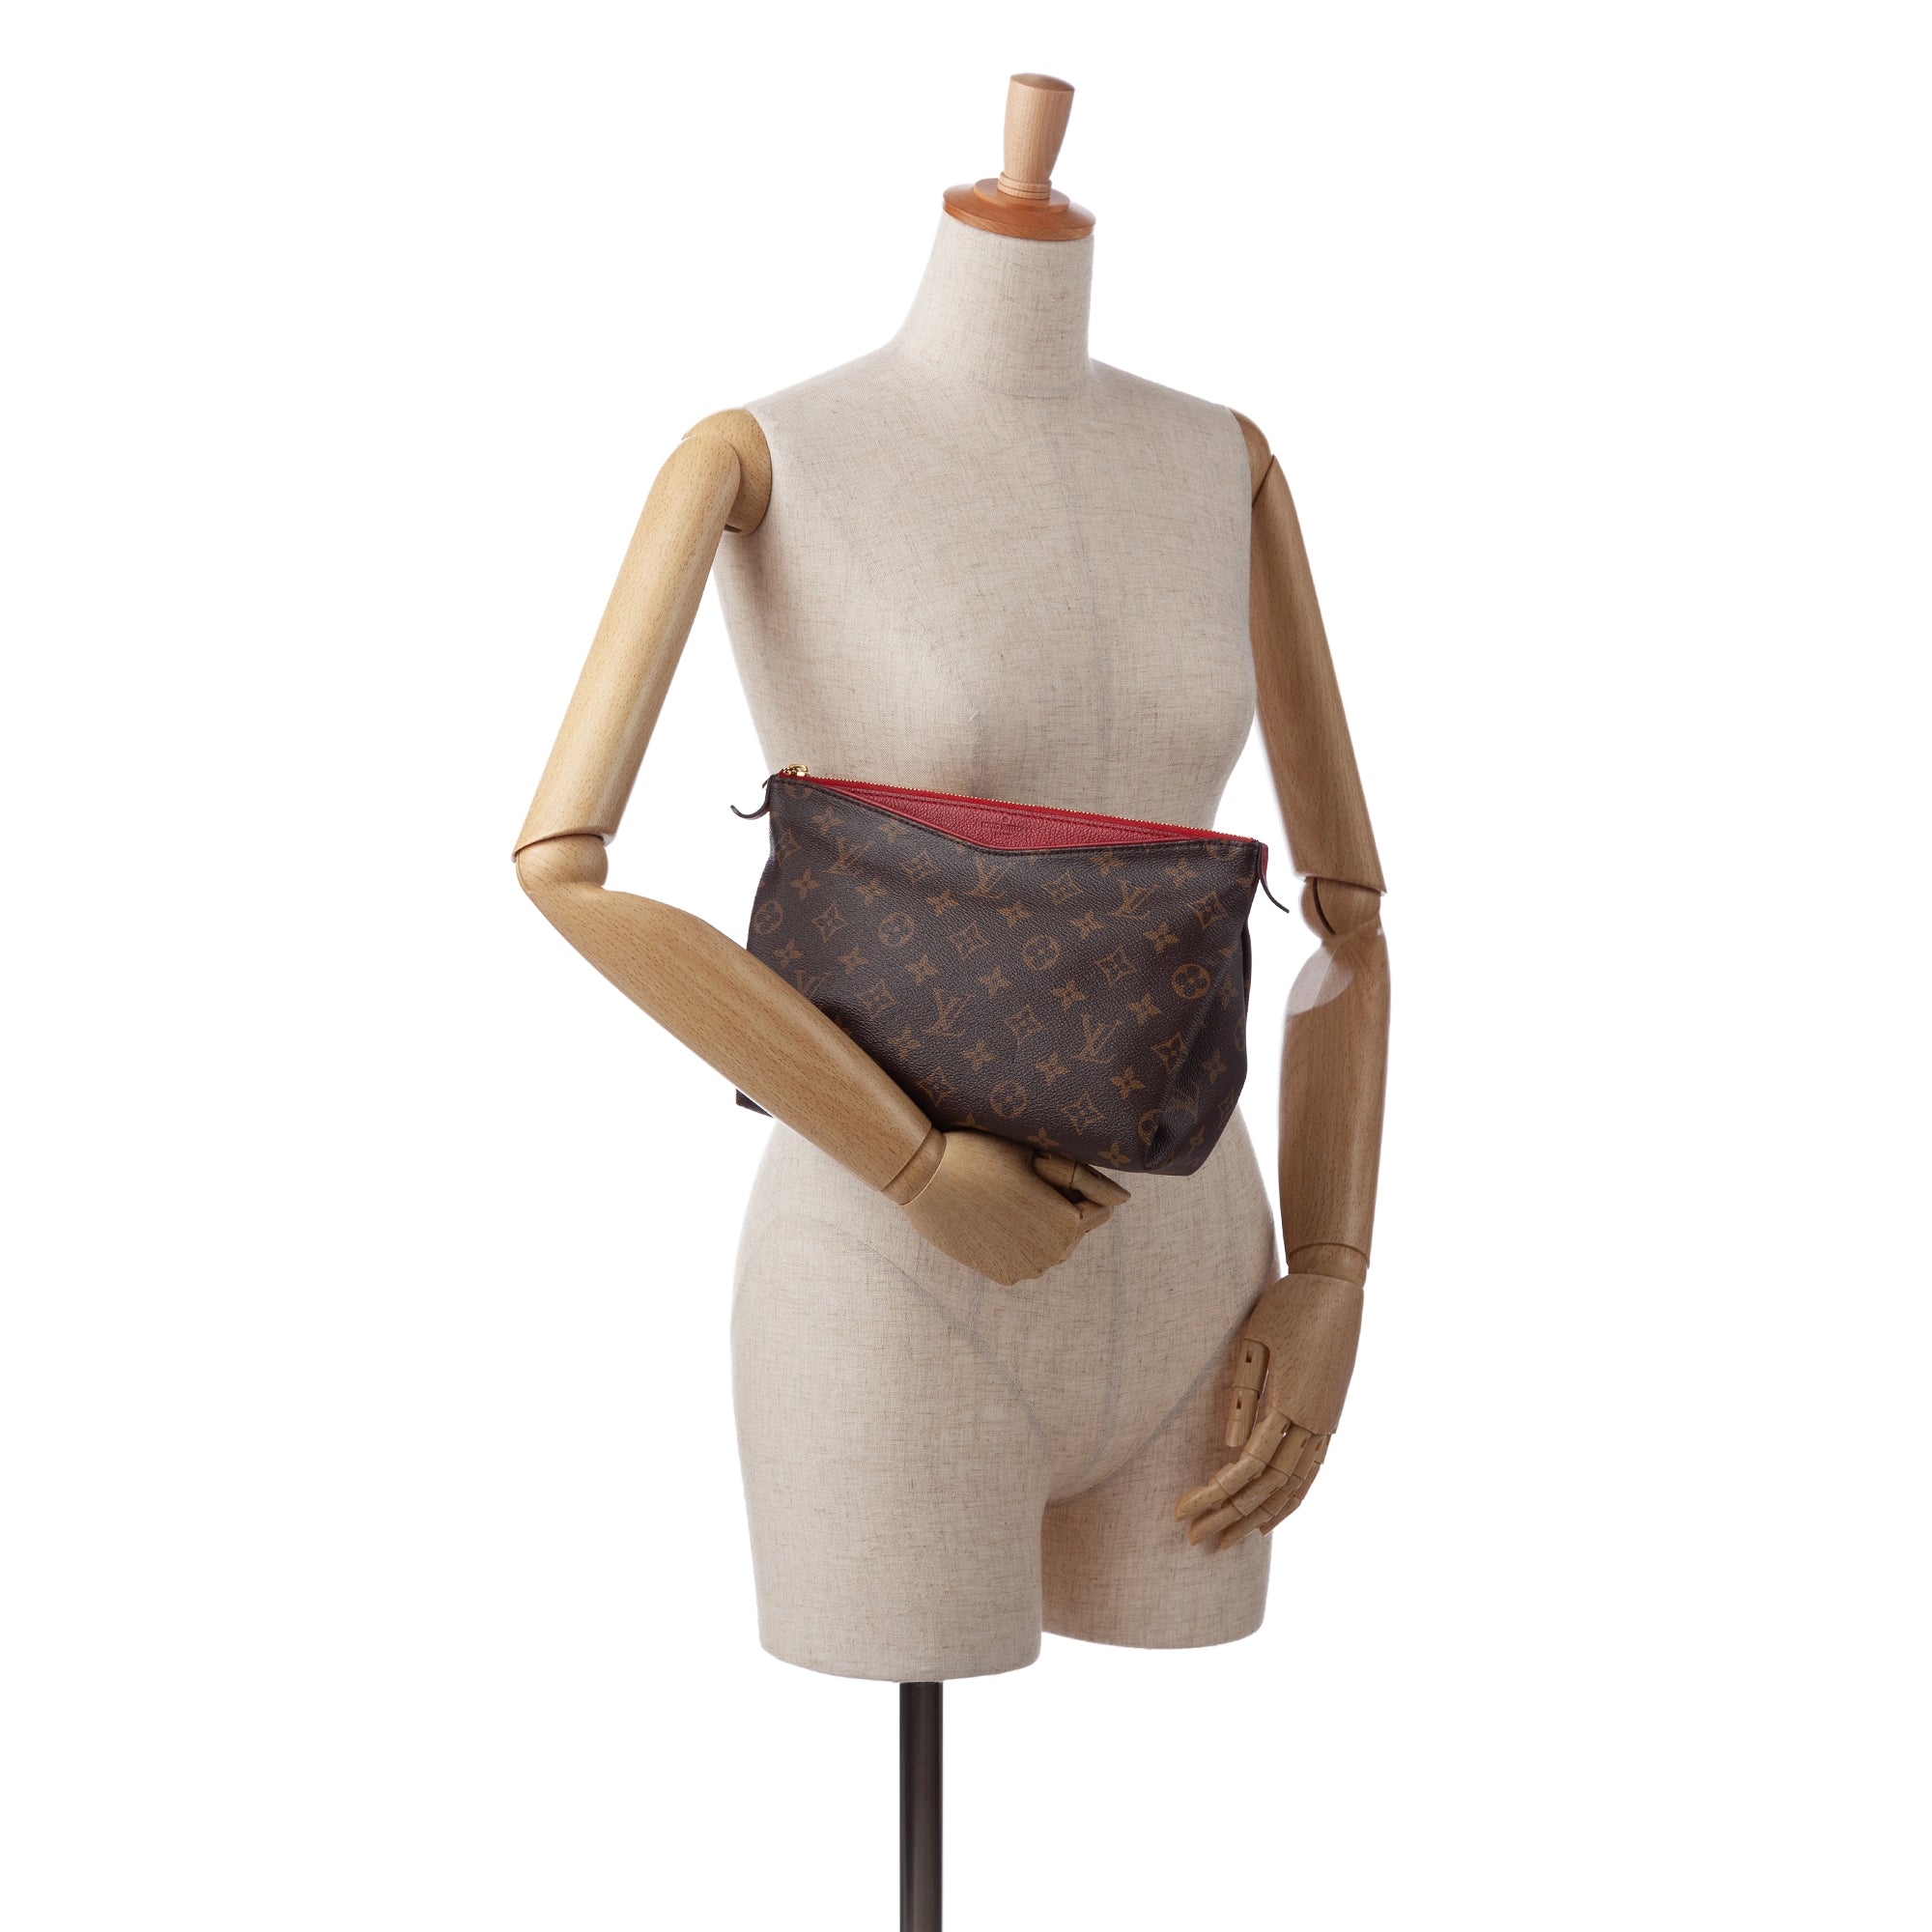 Louis Vuitton, Bags, Louis Vuitton Monogram Pallas Beauty Case Clutch